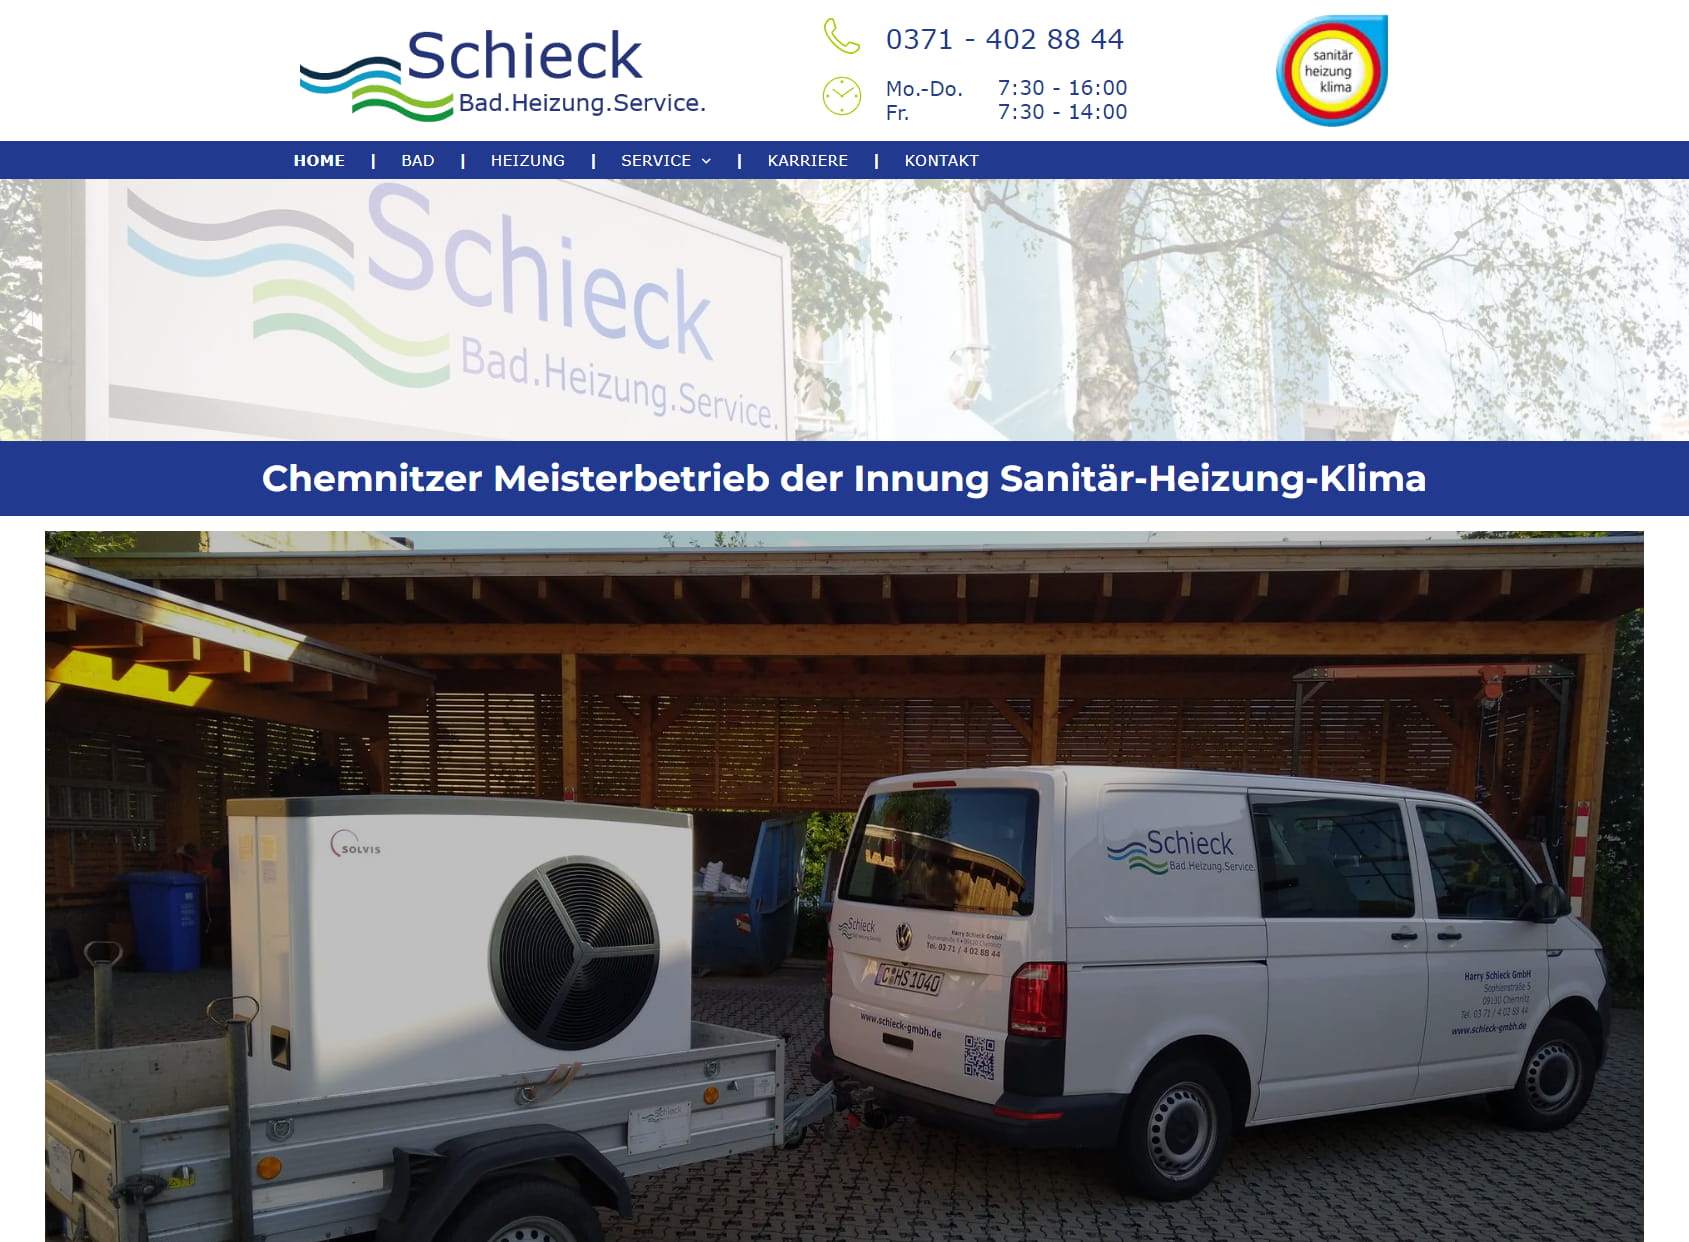 Schieck GmbH